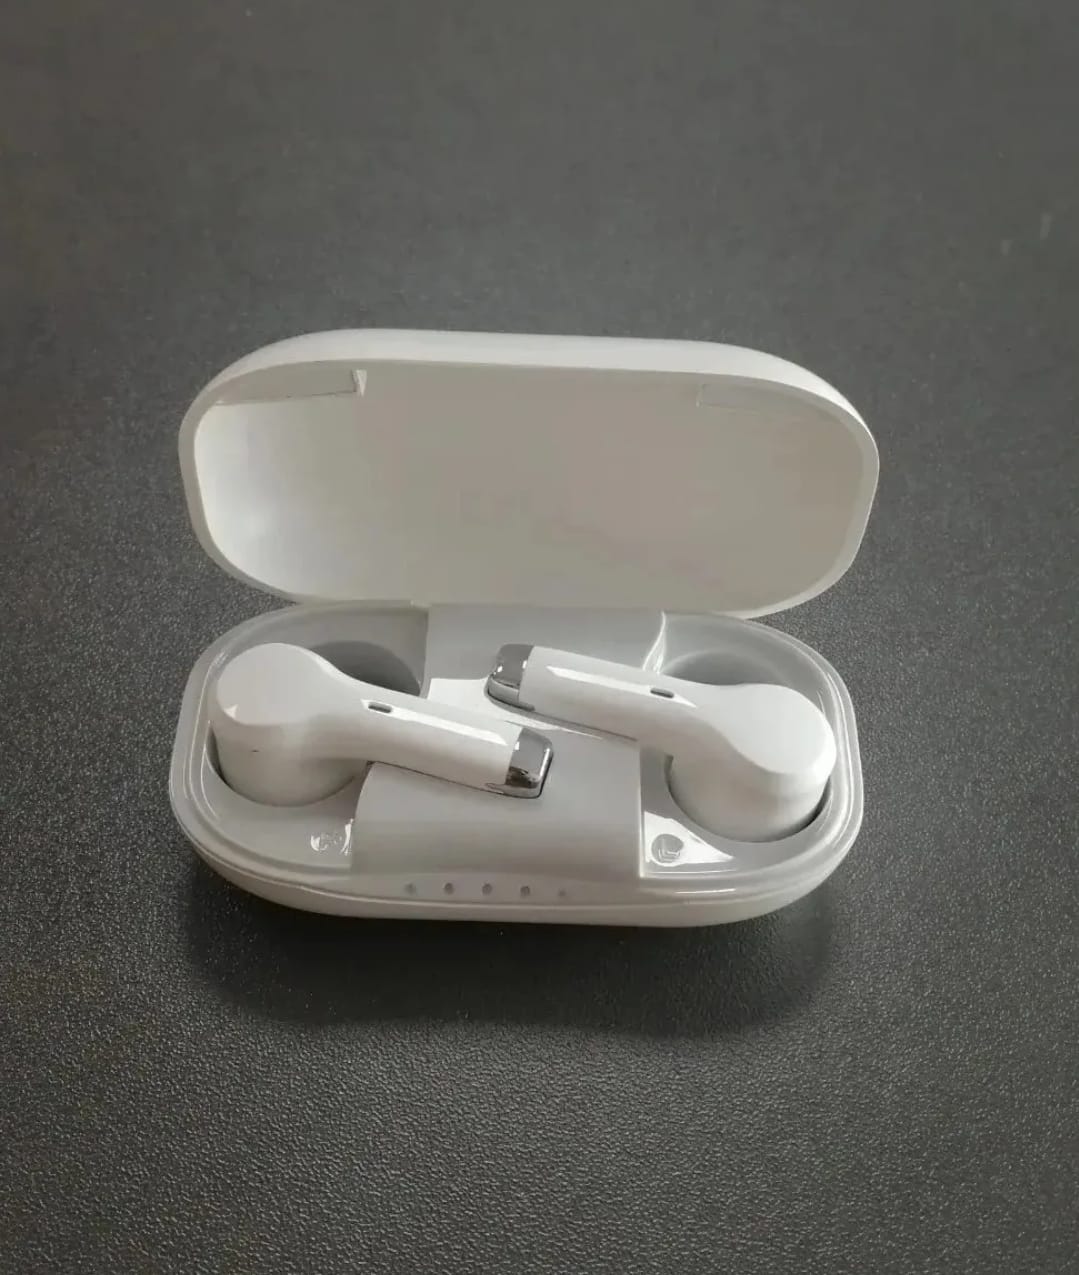 eEAR®-TWS-BT-001 Audífonos estilo Airpod, muy discretos, no se parecen a los audífonos típicos, sino que se parecen a los Airpods de moda Bluetooth suministrados por las principales marcas de teléfonos móviles